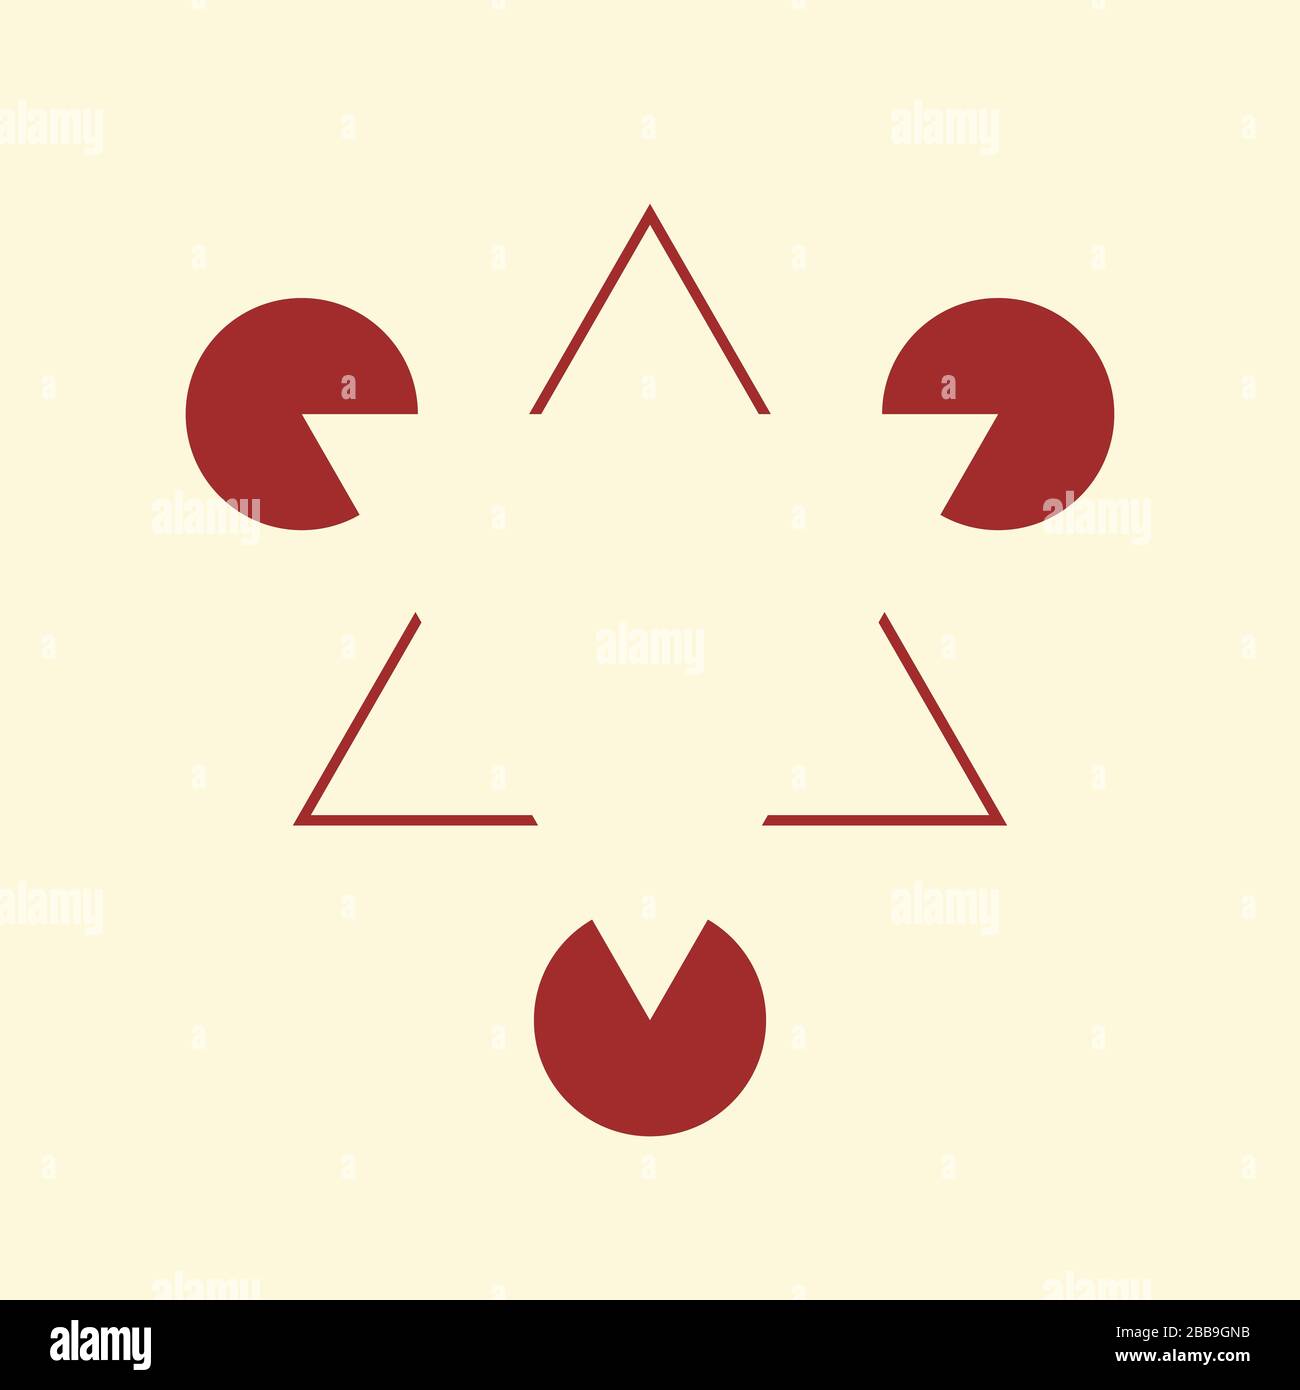 Kanizsa Triangle Illusion Stock Photo